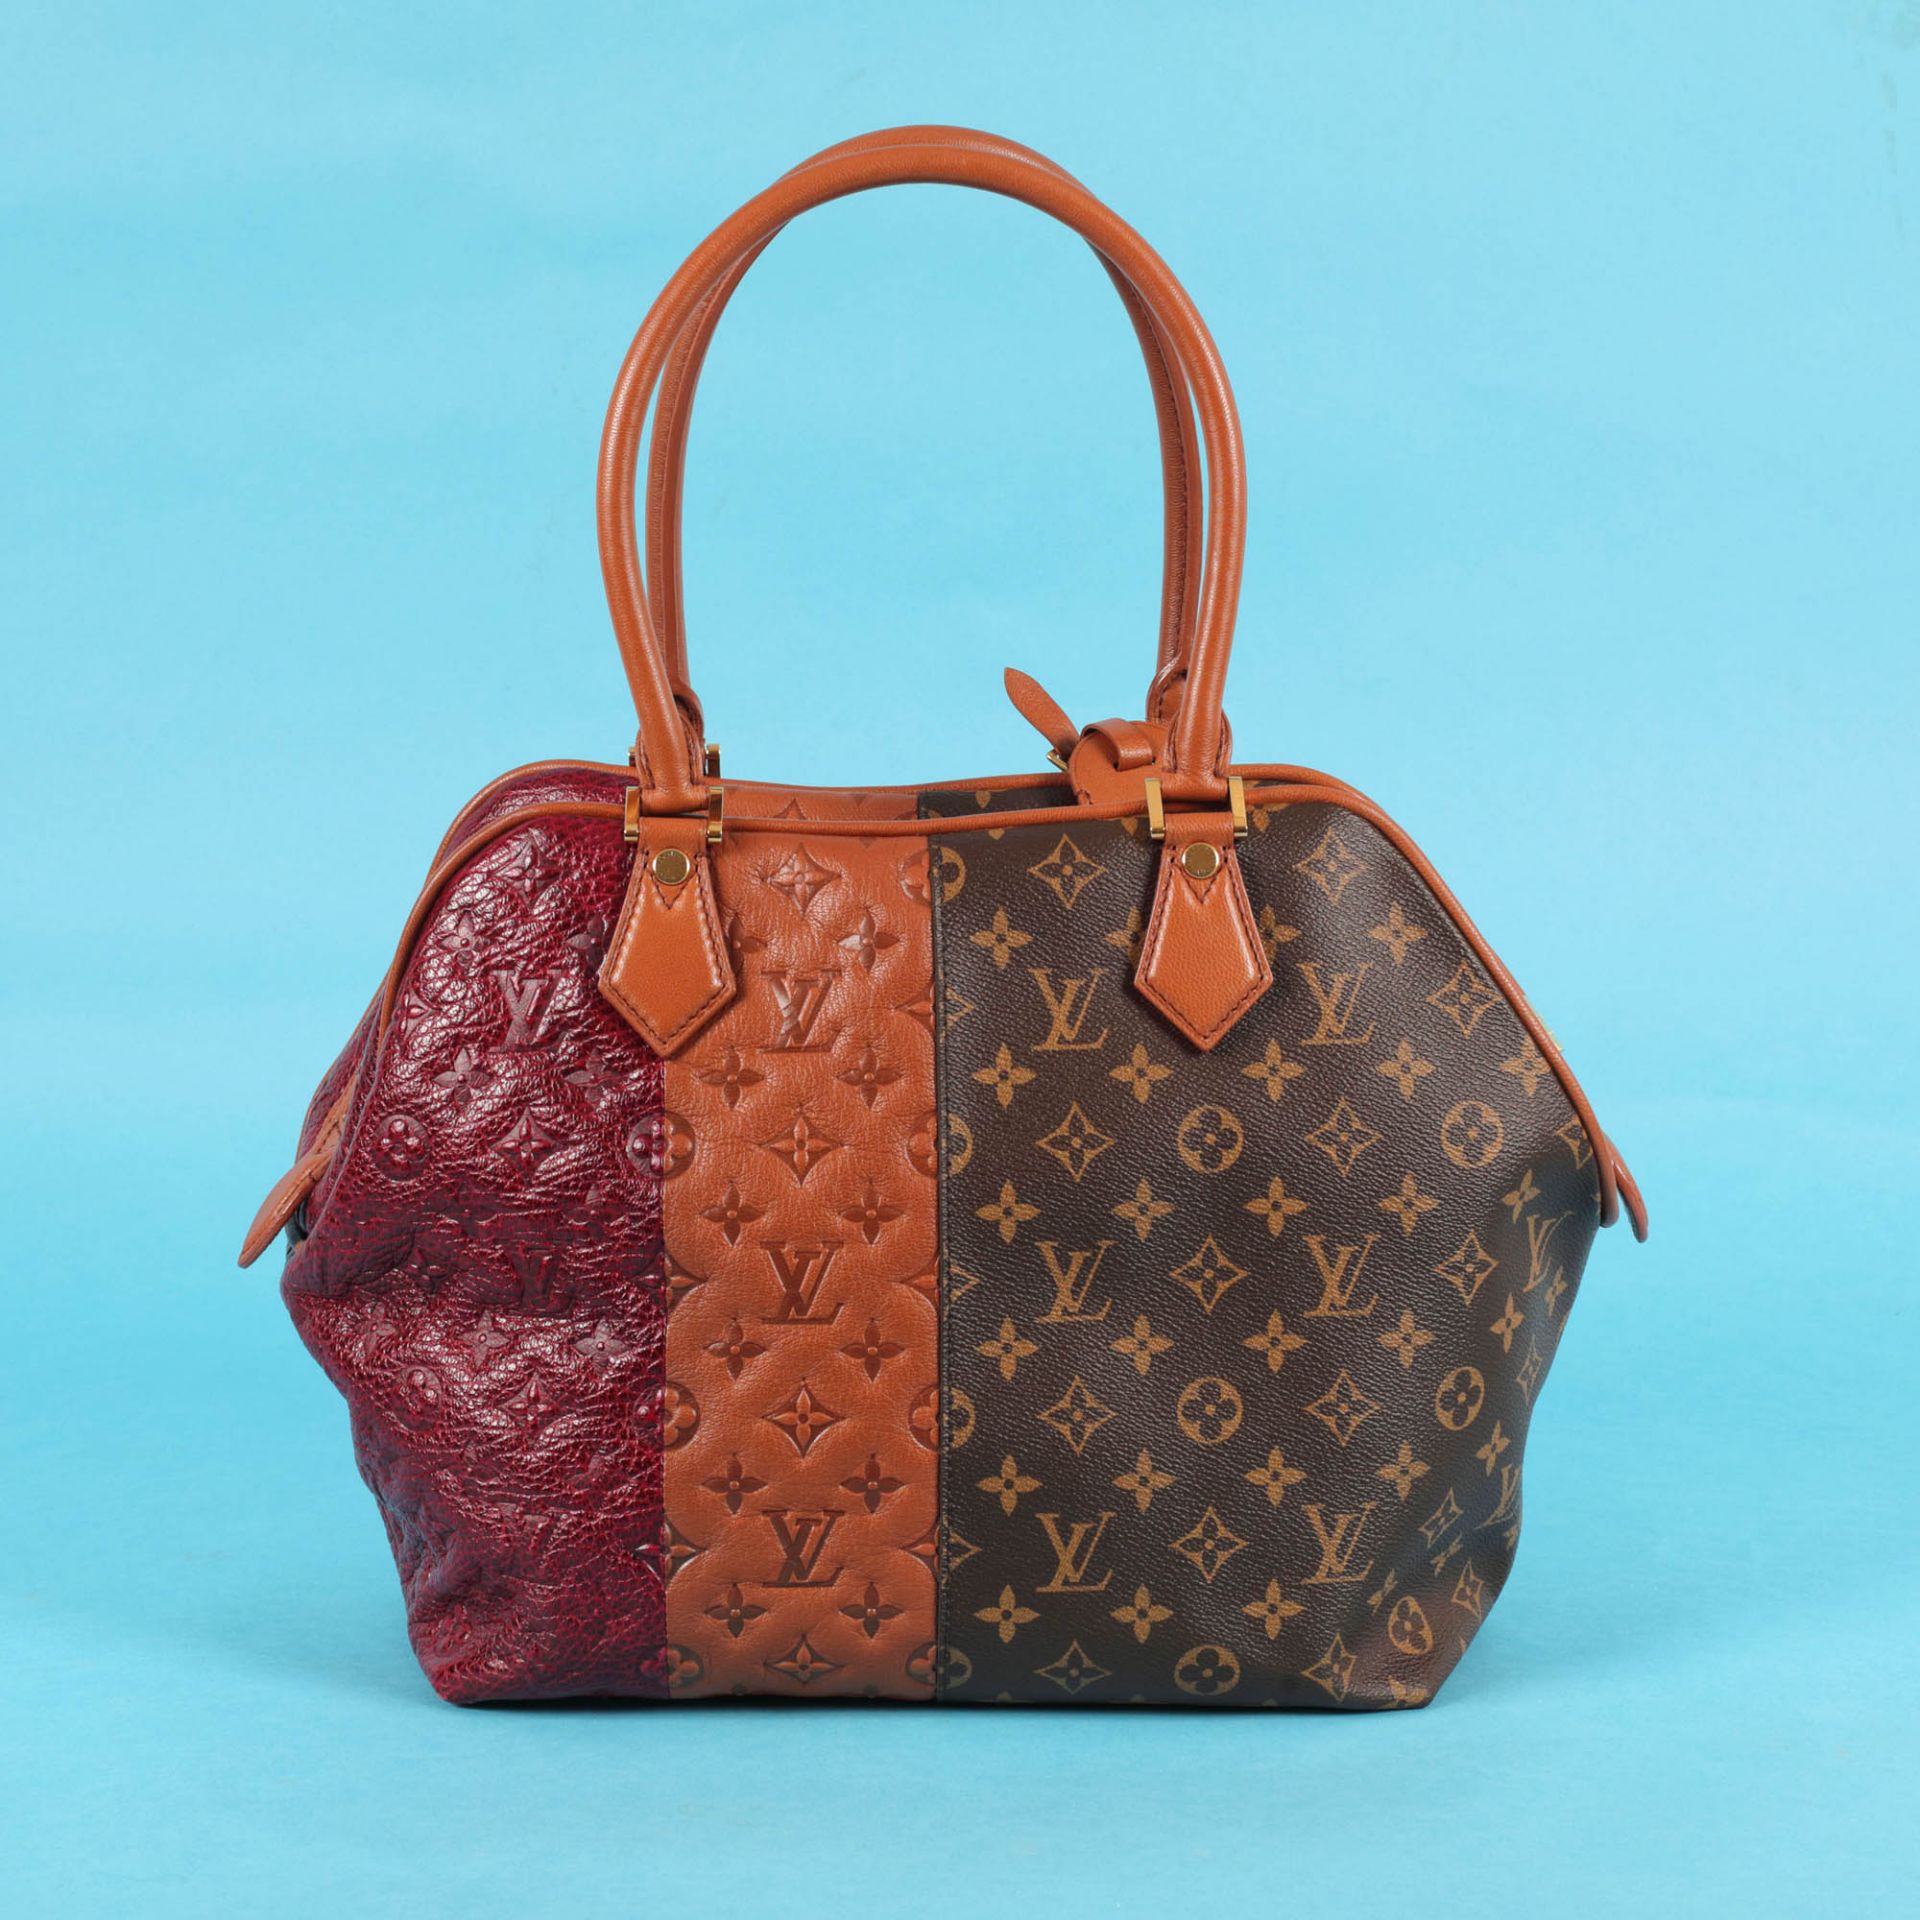 Louis Vuitton bag, "Trois matières" collection, designer Marc Jacobs, for women, accompanied by an - Bild 2 aus 9